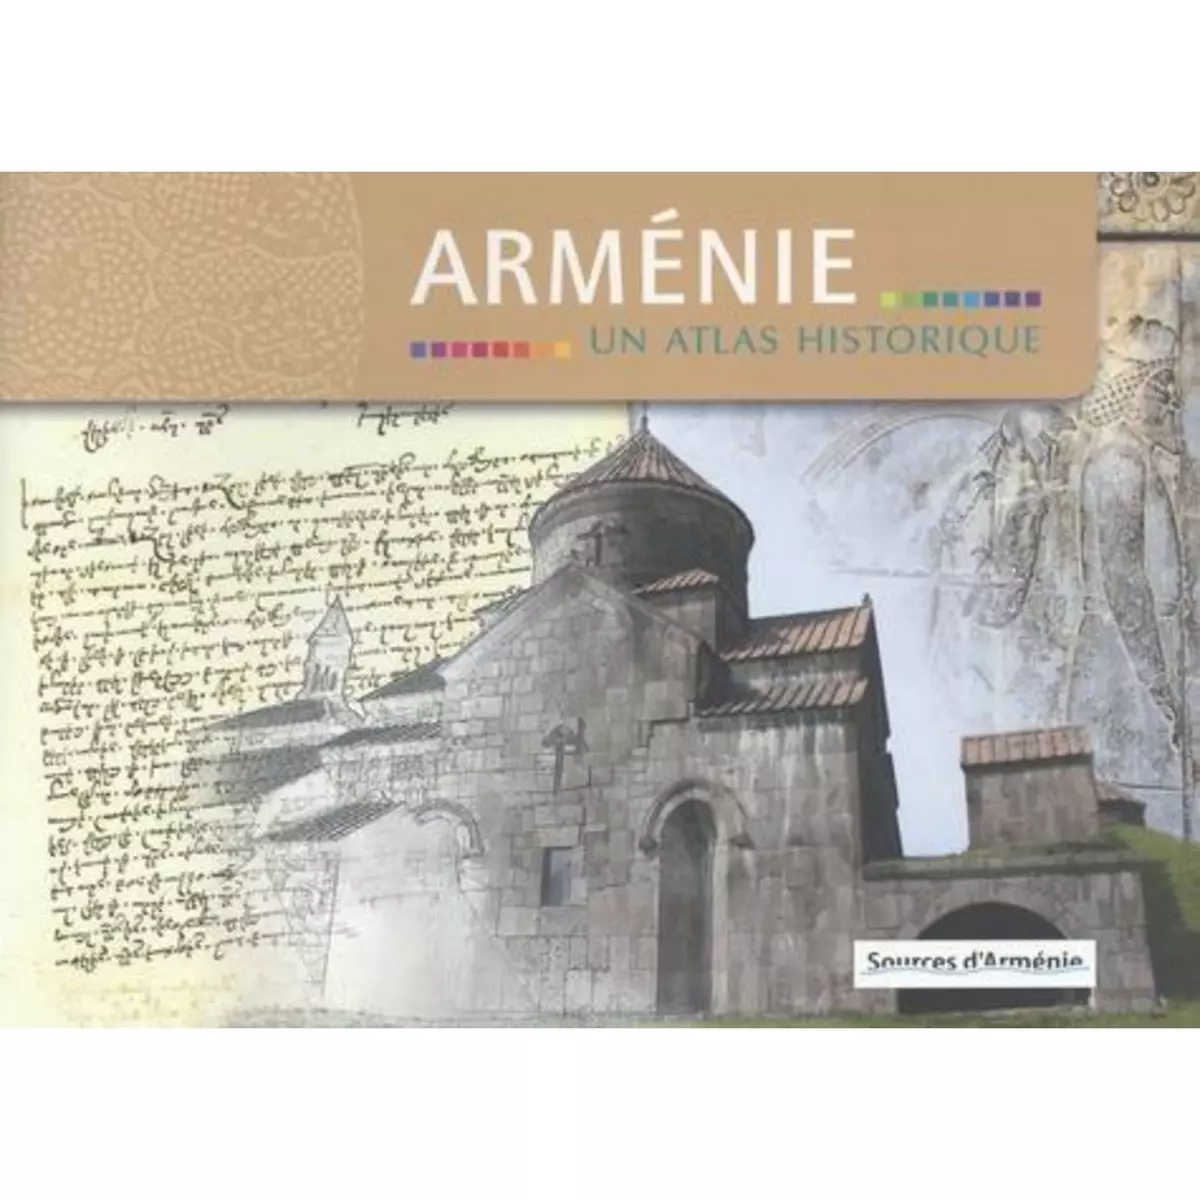  ARMENIE. UN ATLAS HISTORIQUE, 7E EDITION REVUE ET AUGMENTEE, Yevadian Maxime K.